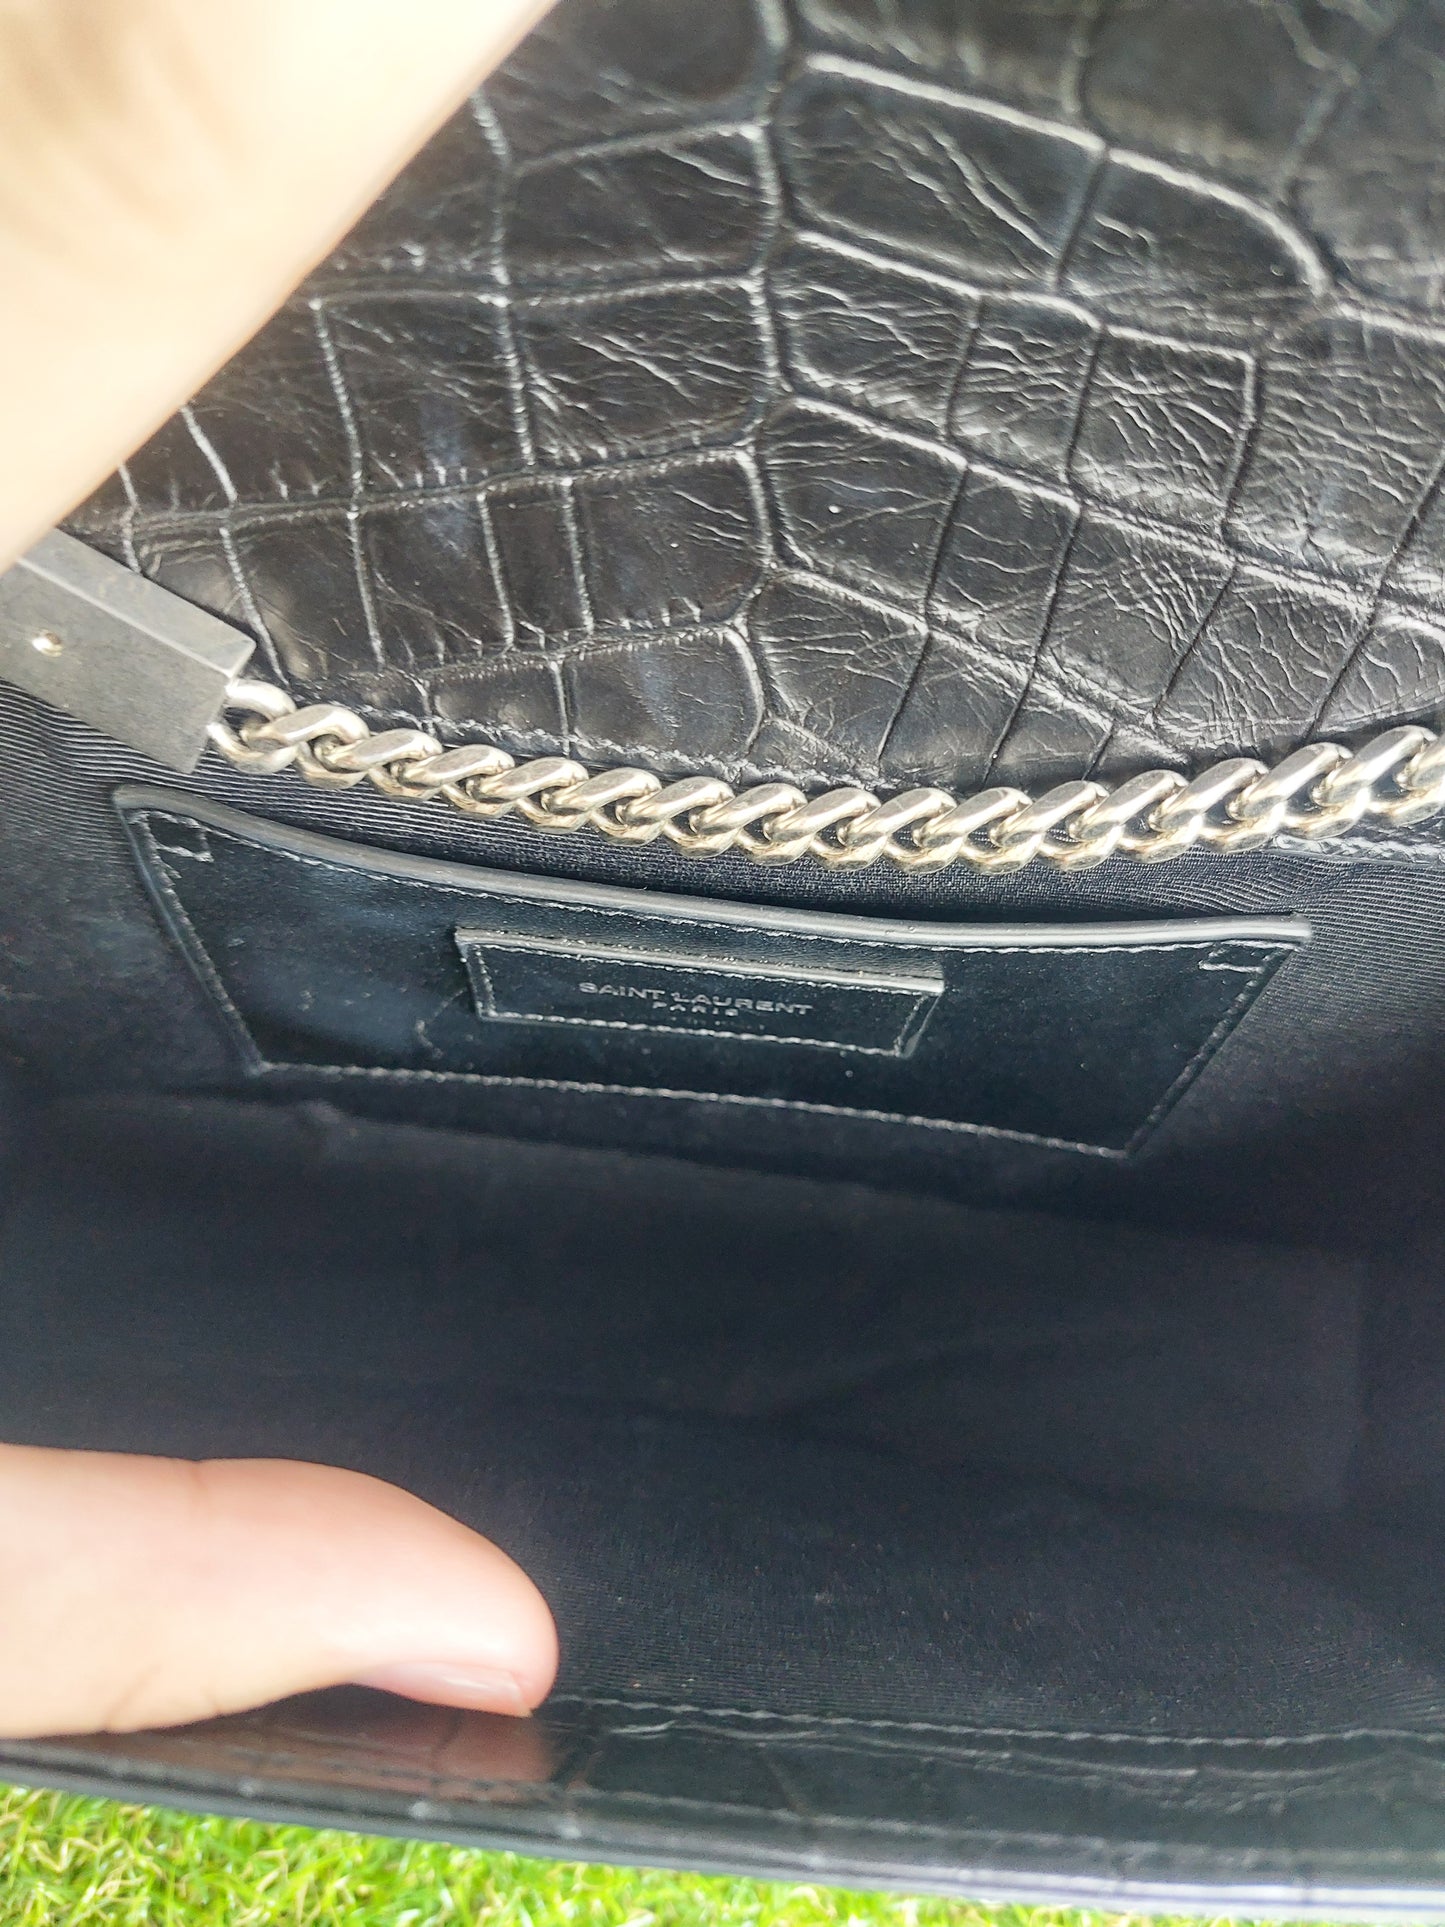 YSL Kate Medium Chain Bag with tassle in crocodile embossed